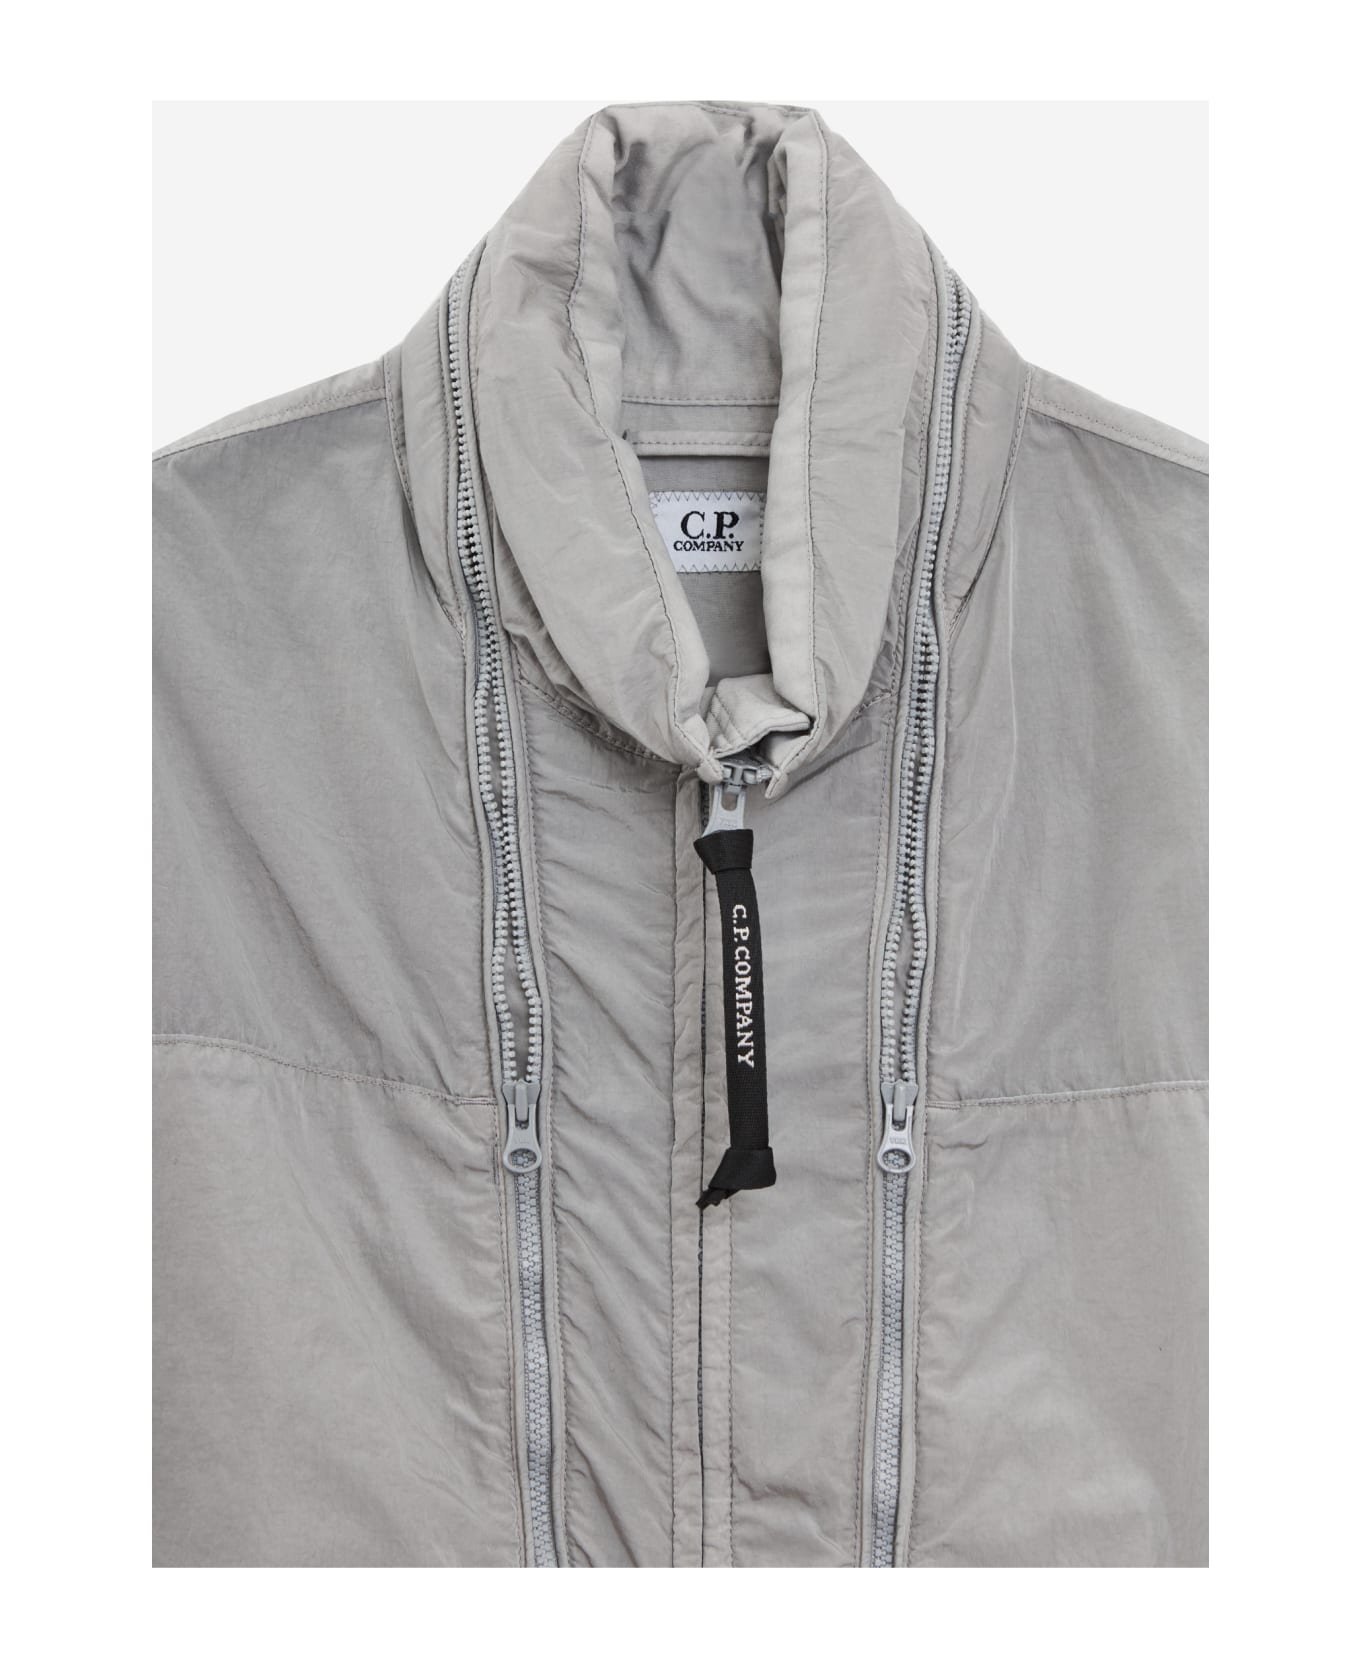 C.P. Company Jacket - grey